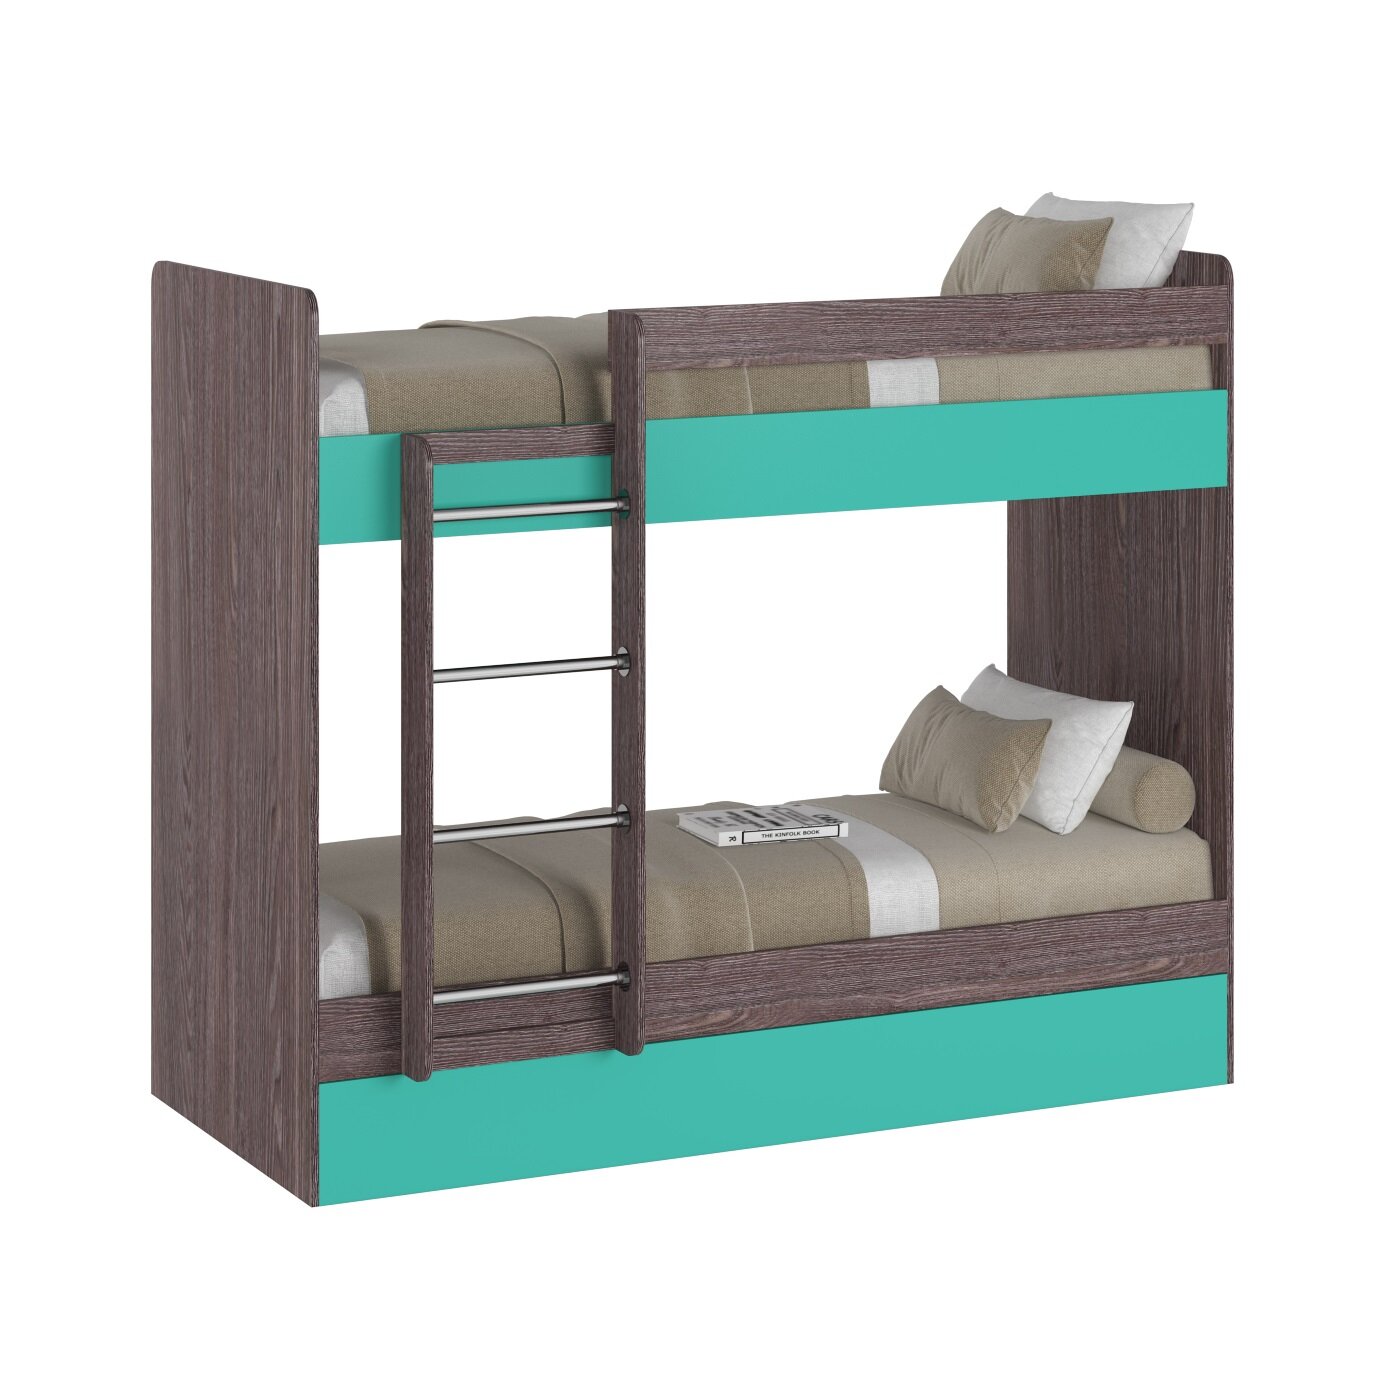 Кровать двухъярусная Есэндвич plus Лаворо, для детей, для взрослых, 200х80 см (Анкор тёмный/Аква)